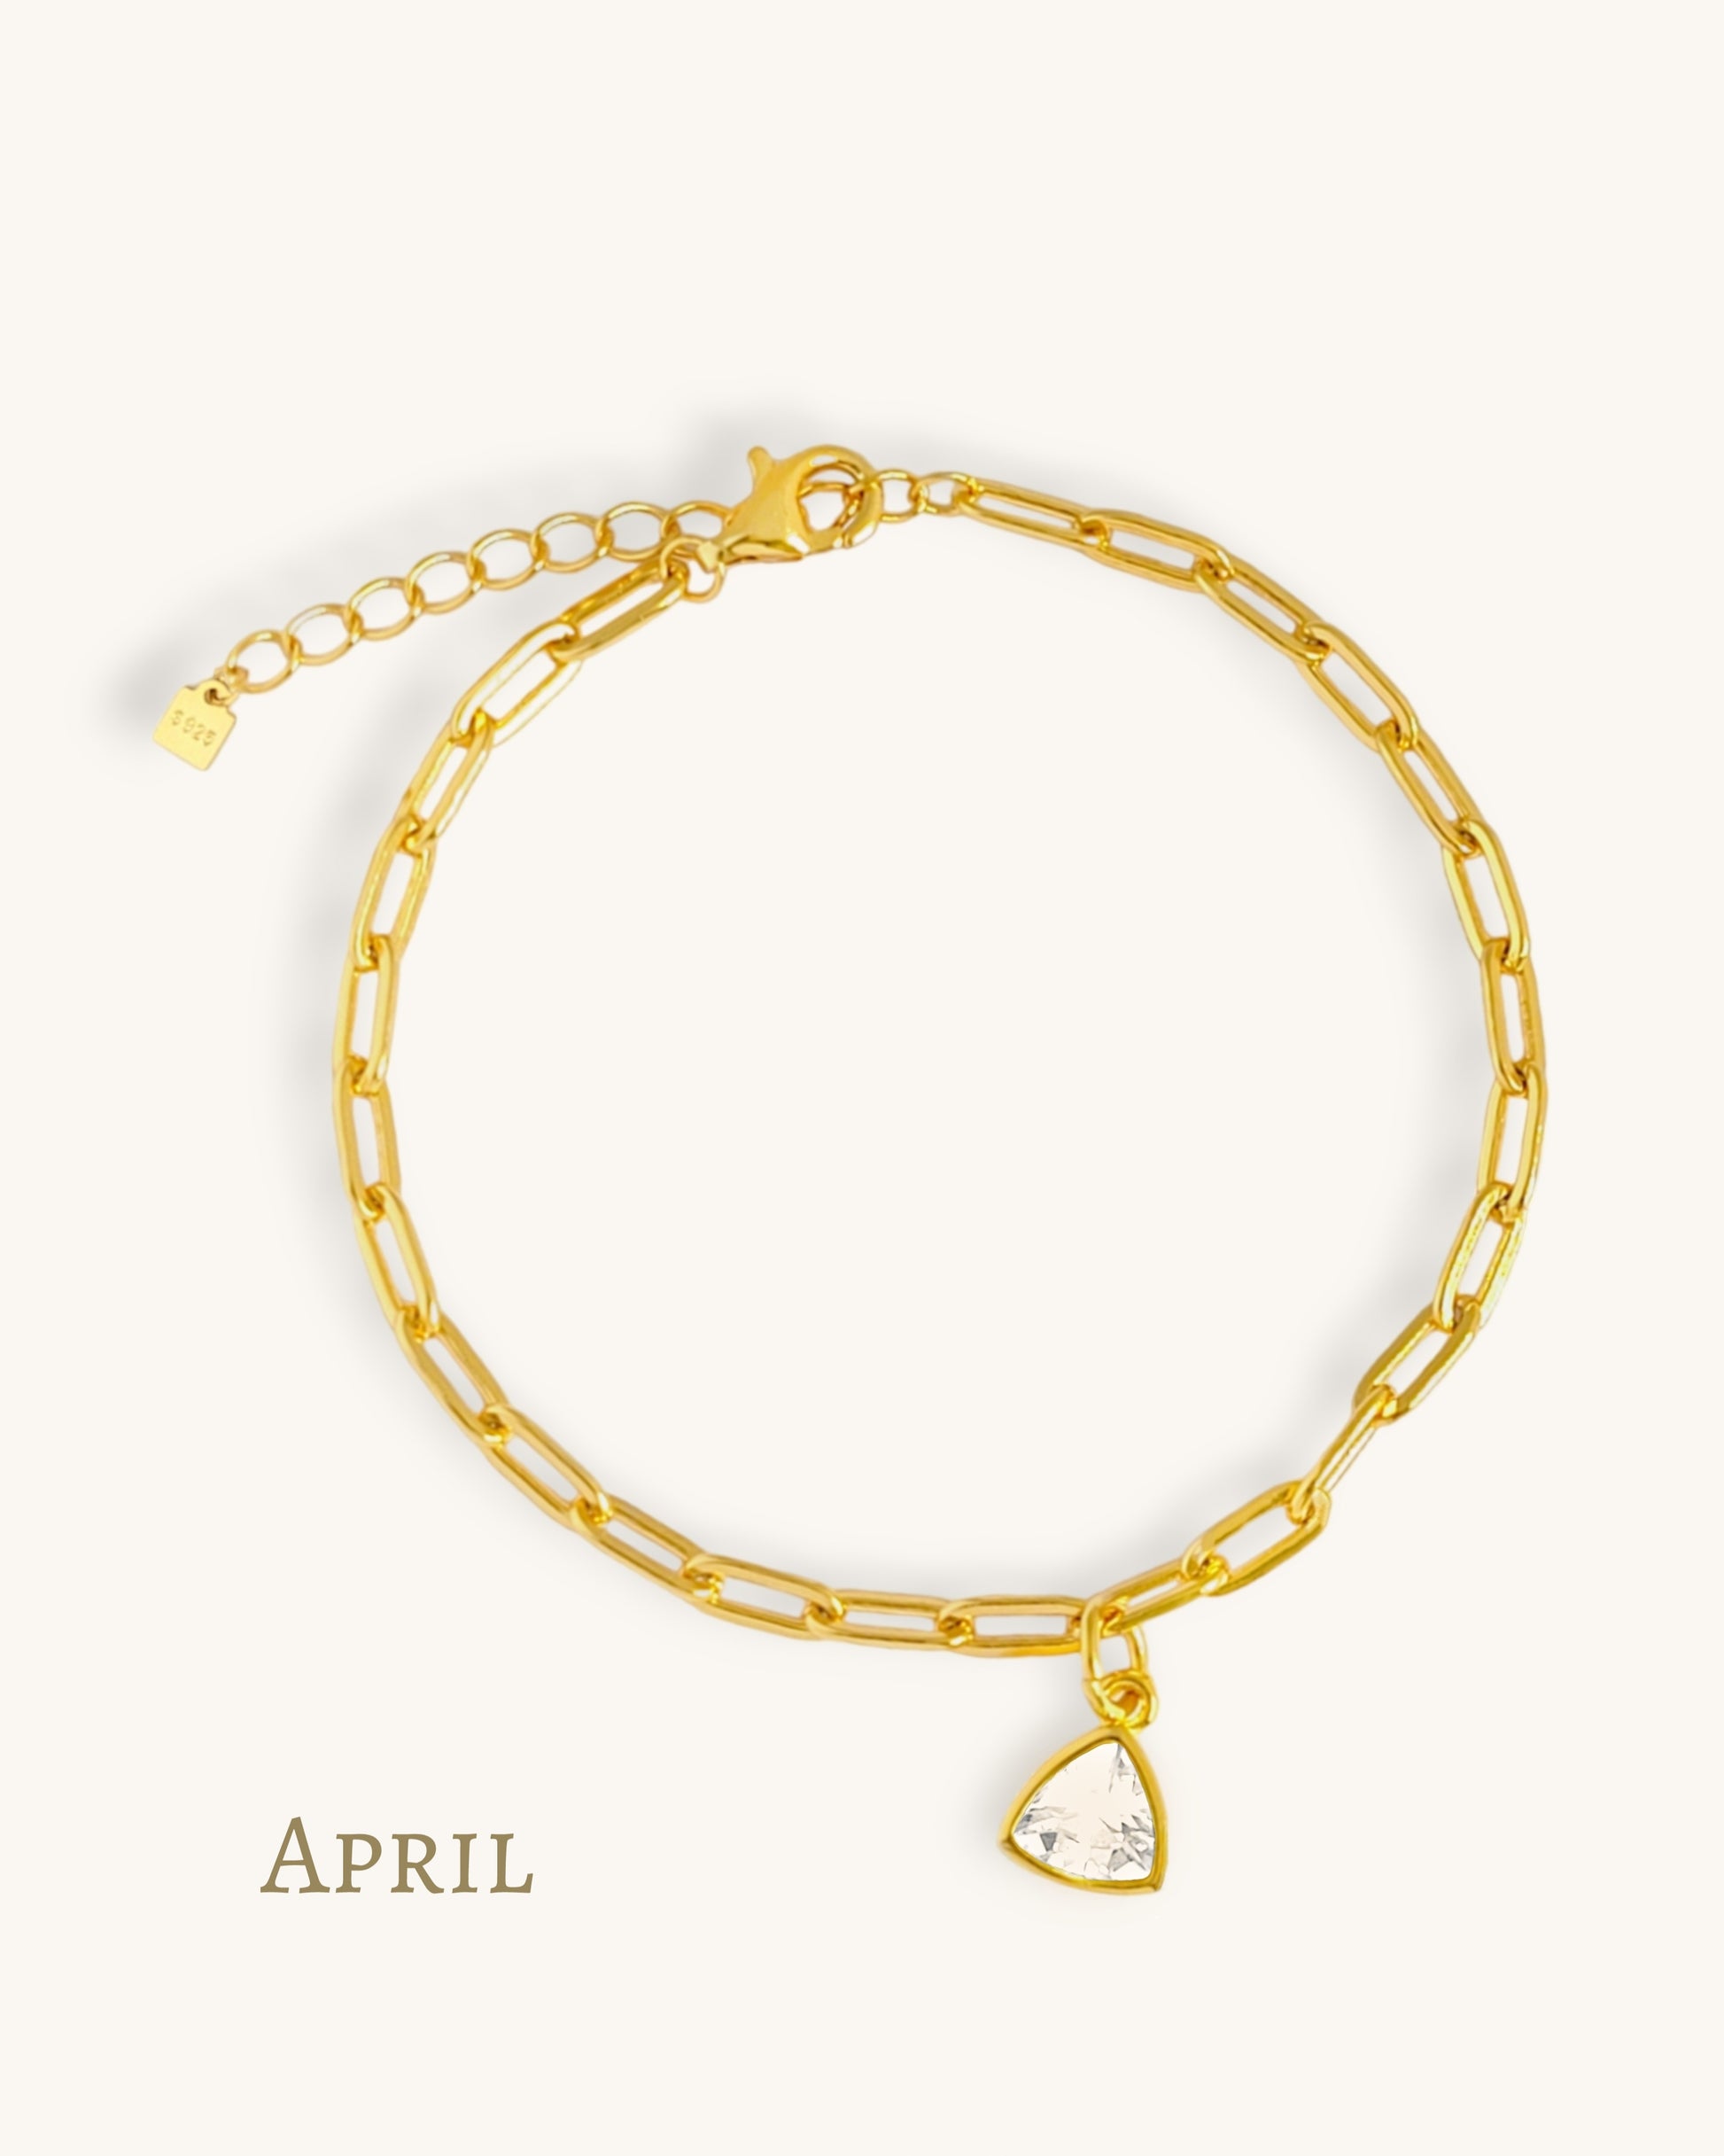 April birthstone bracelet